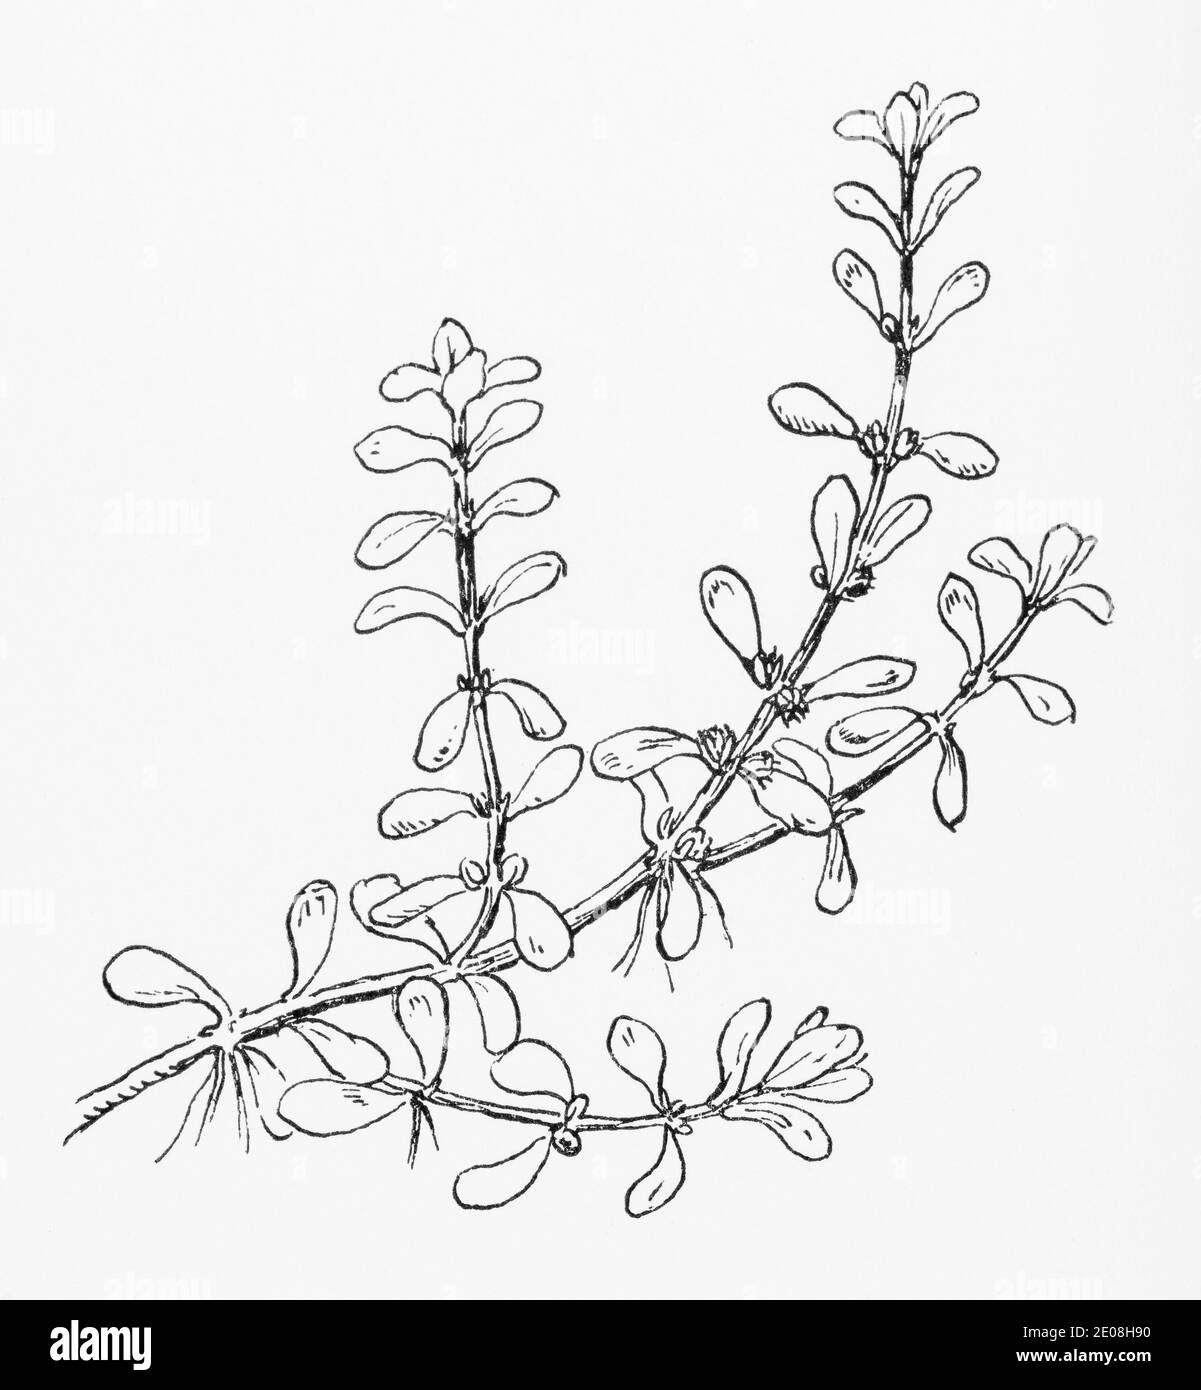 Ancienne gravure d'illustration botanique de l'eau Purslane / Lythrum portula, Peplis portula. Voir Remarques Banque D'Images